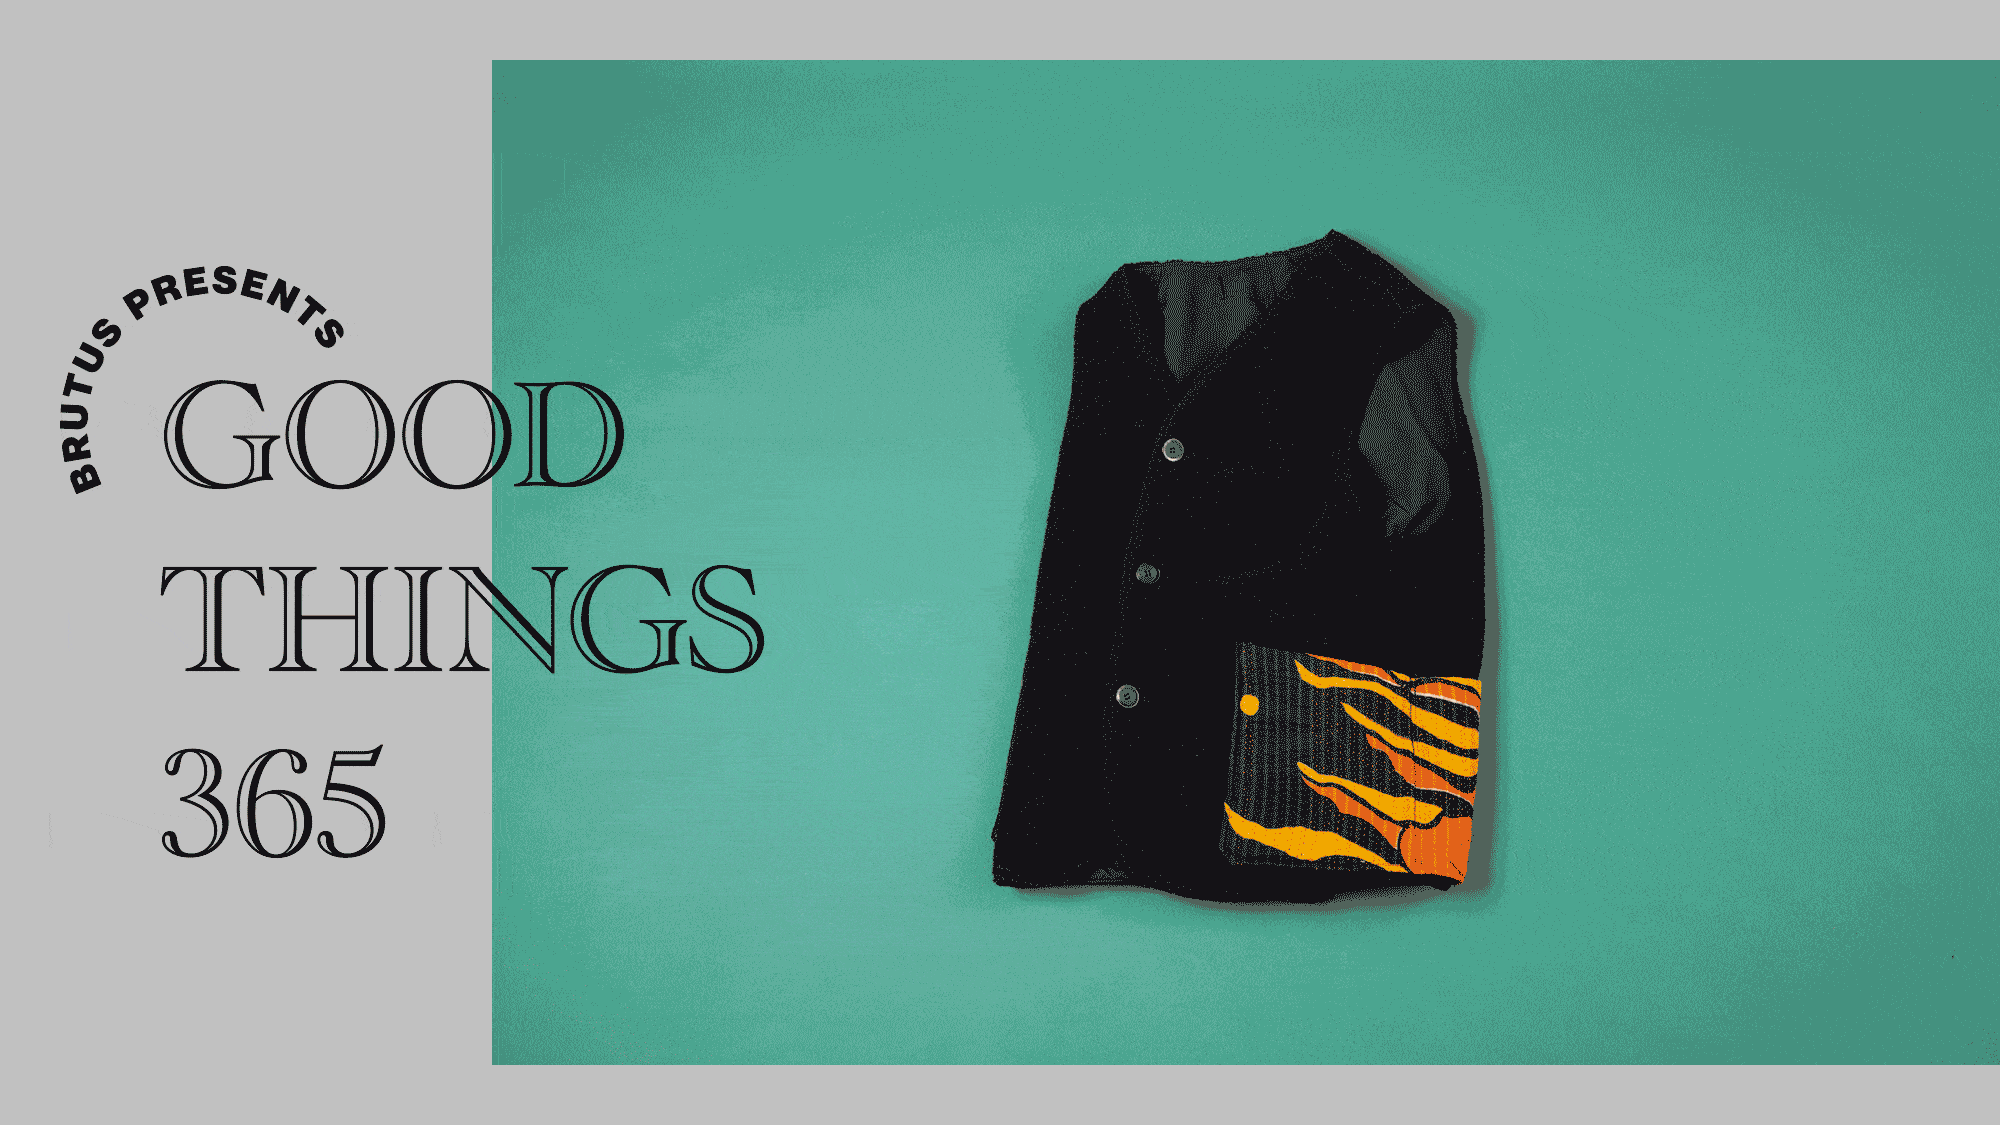 〈ボドコス〉のフリースベスト：GOOD THINGS 365